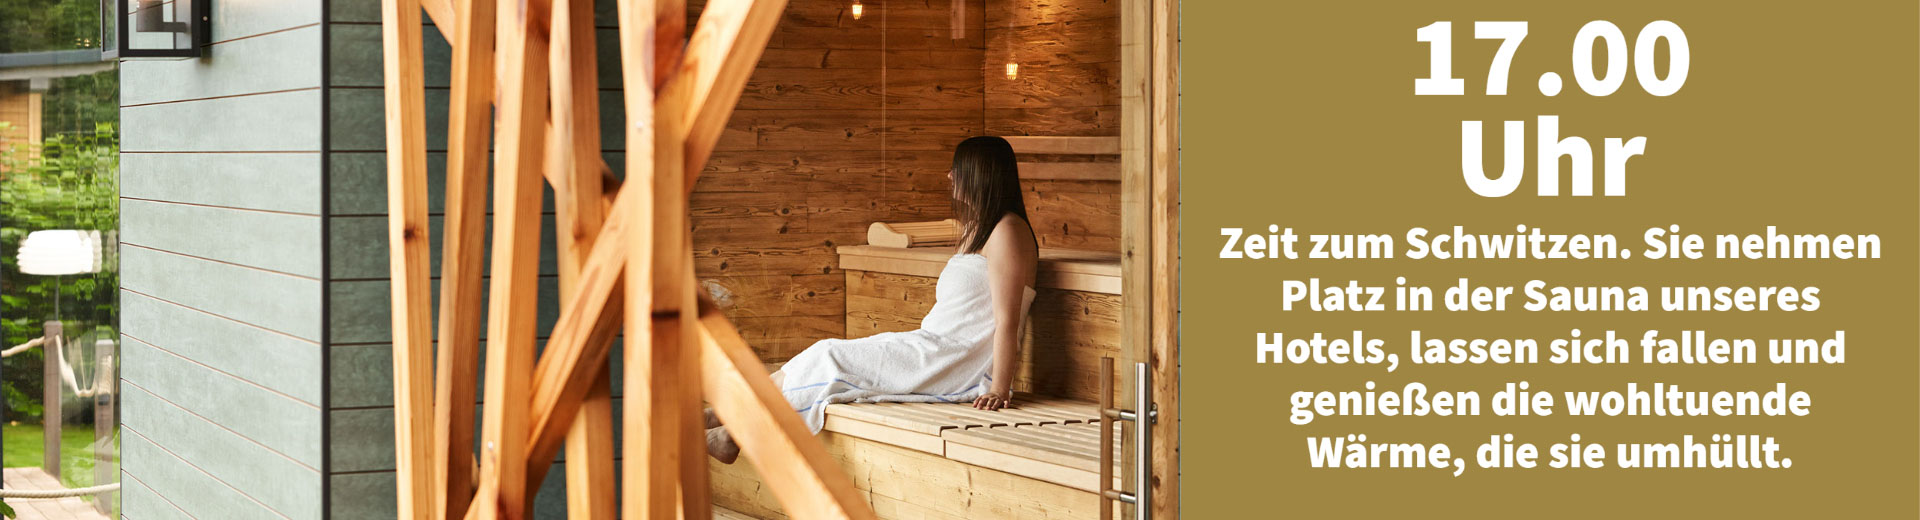 Ein Banner des Ein Tag im Erasmus im Hotel bei Saarburg zeigt eine Frau im Saunabereich entspannen